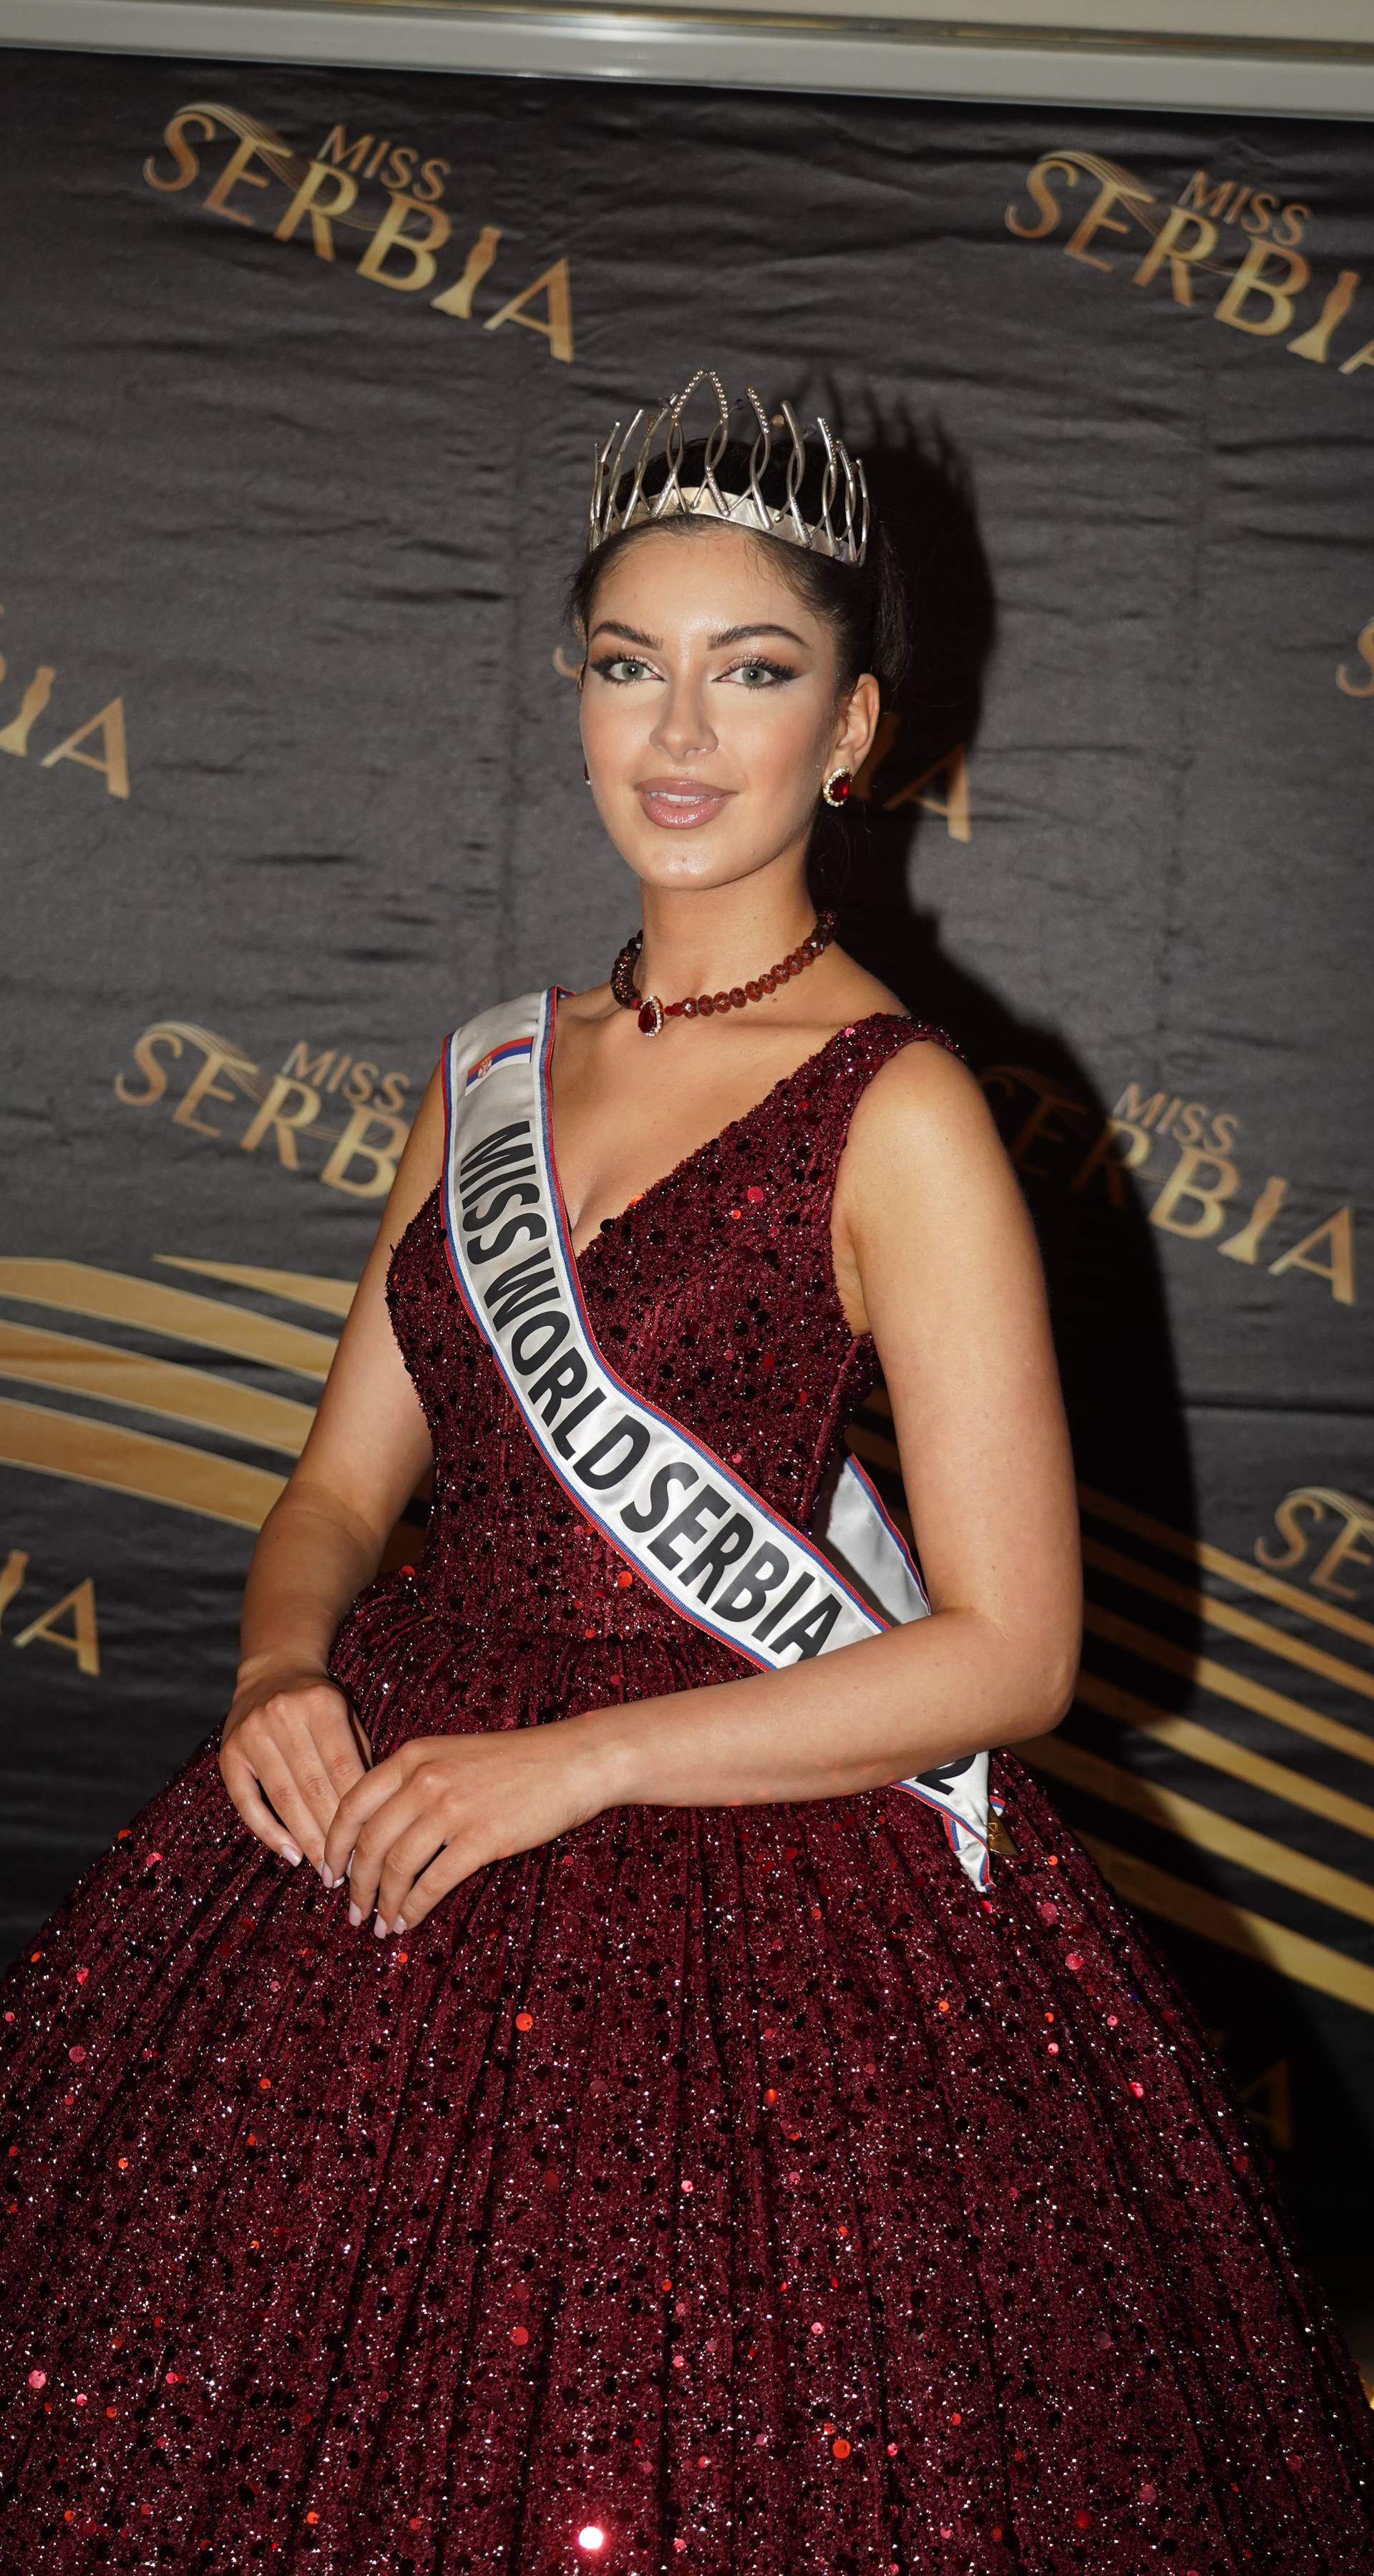 Beograd: Miss Srbije Anja Radić odlazi na natjecanje Miss World u Indiju